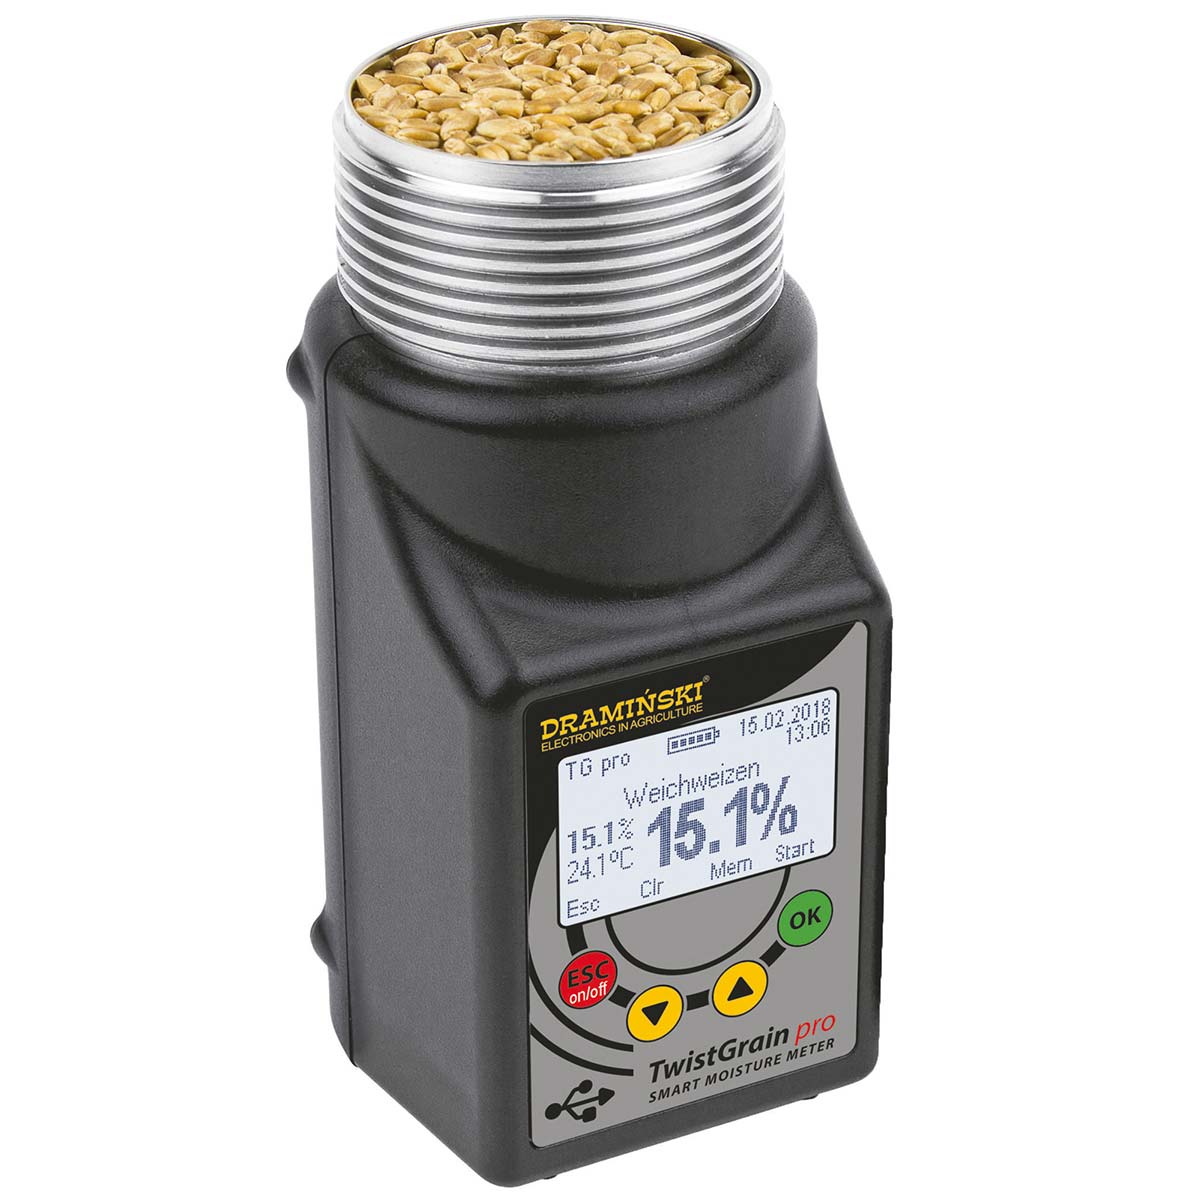 Misuratore di umidità  per cereali TwistGrain pro